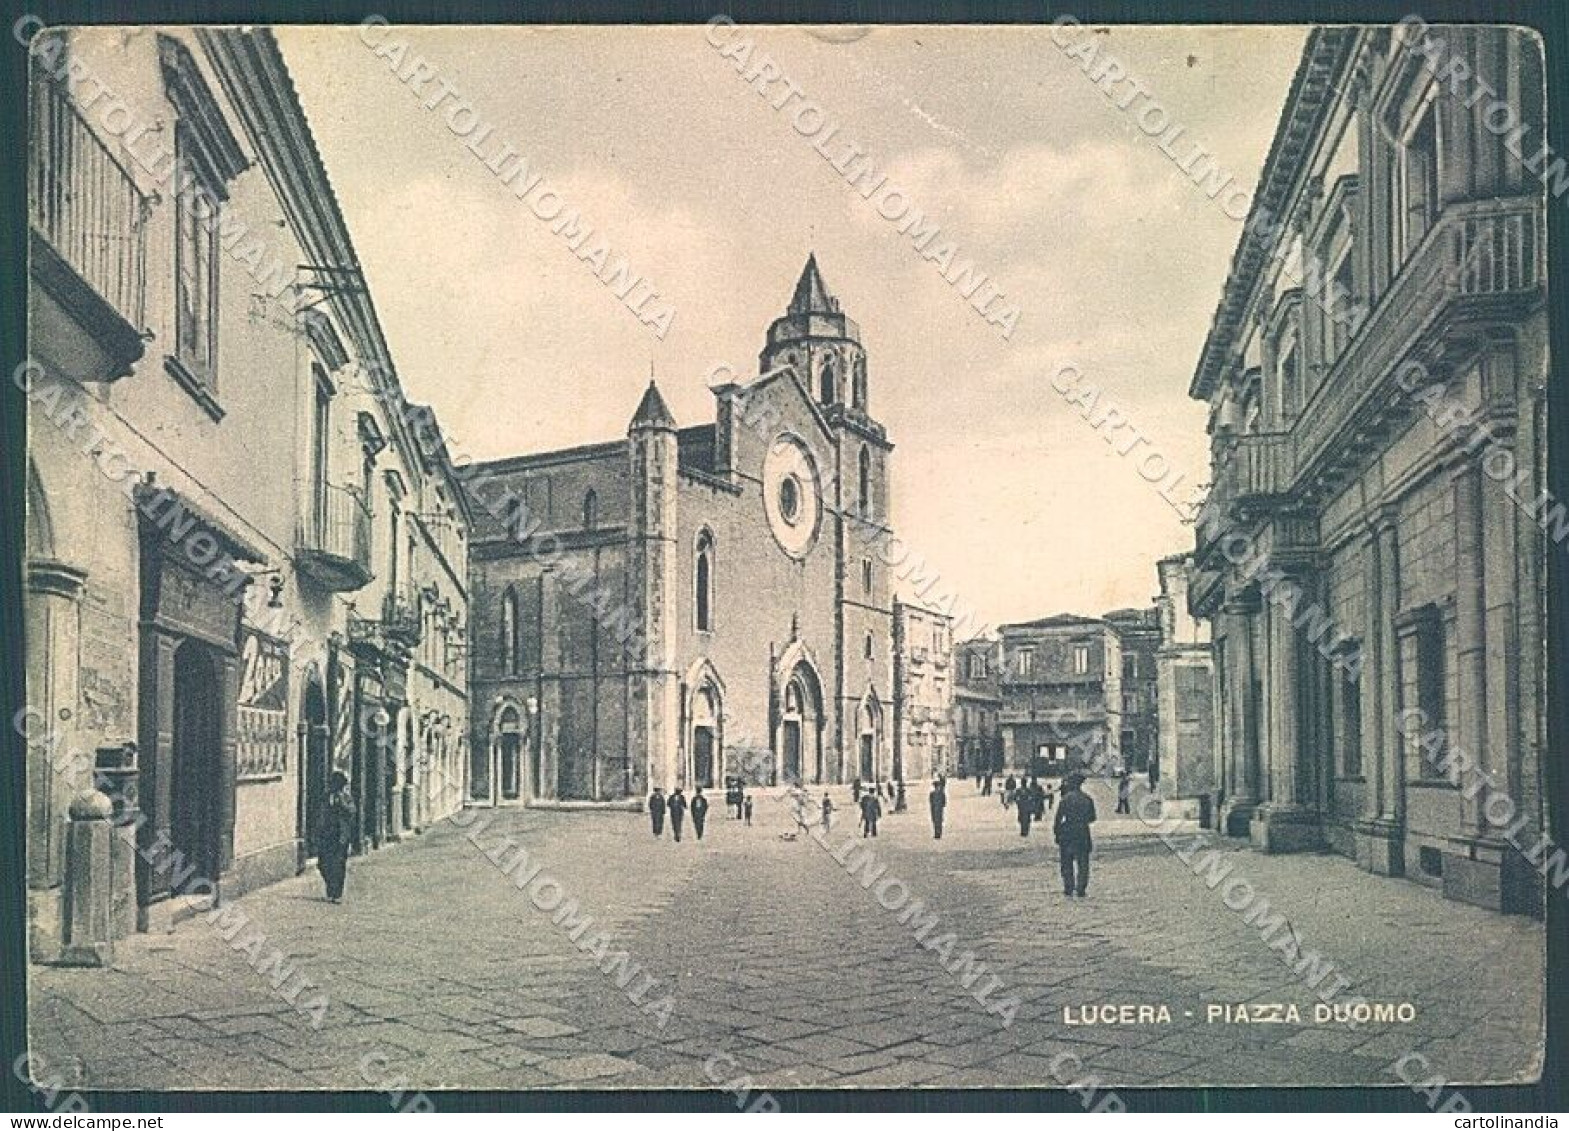 Foggia Lucera Piazza Duomo PIEGHINE FG Cartolina JK5987 - Foggia